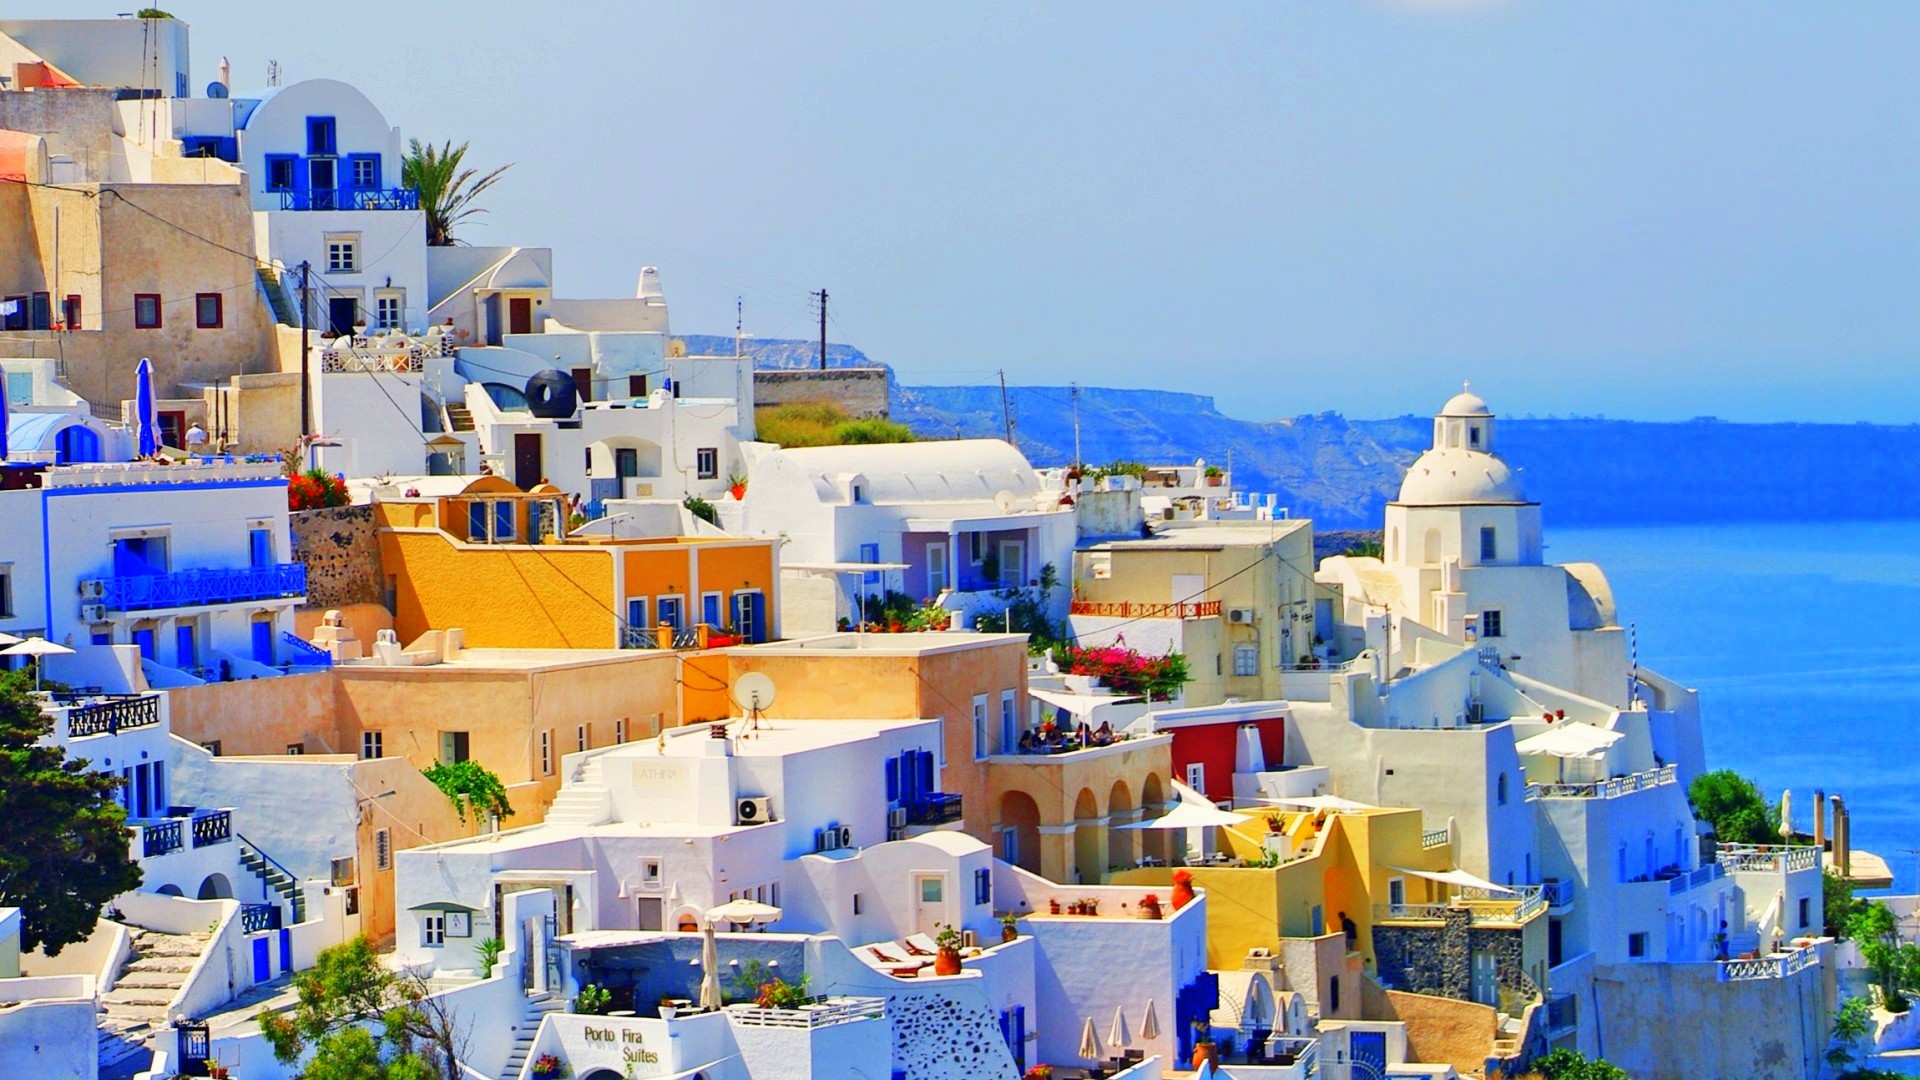 griechenland tapete,blau,stadt, dorf,eigentum,tourismus